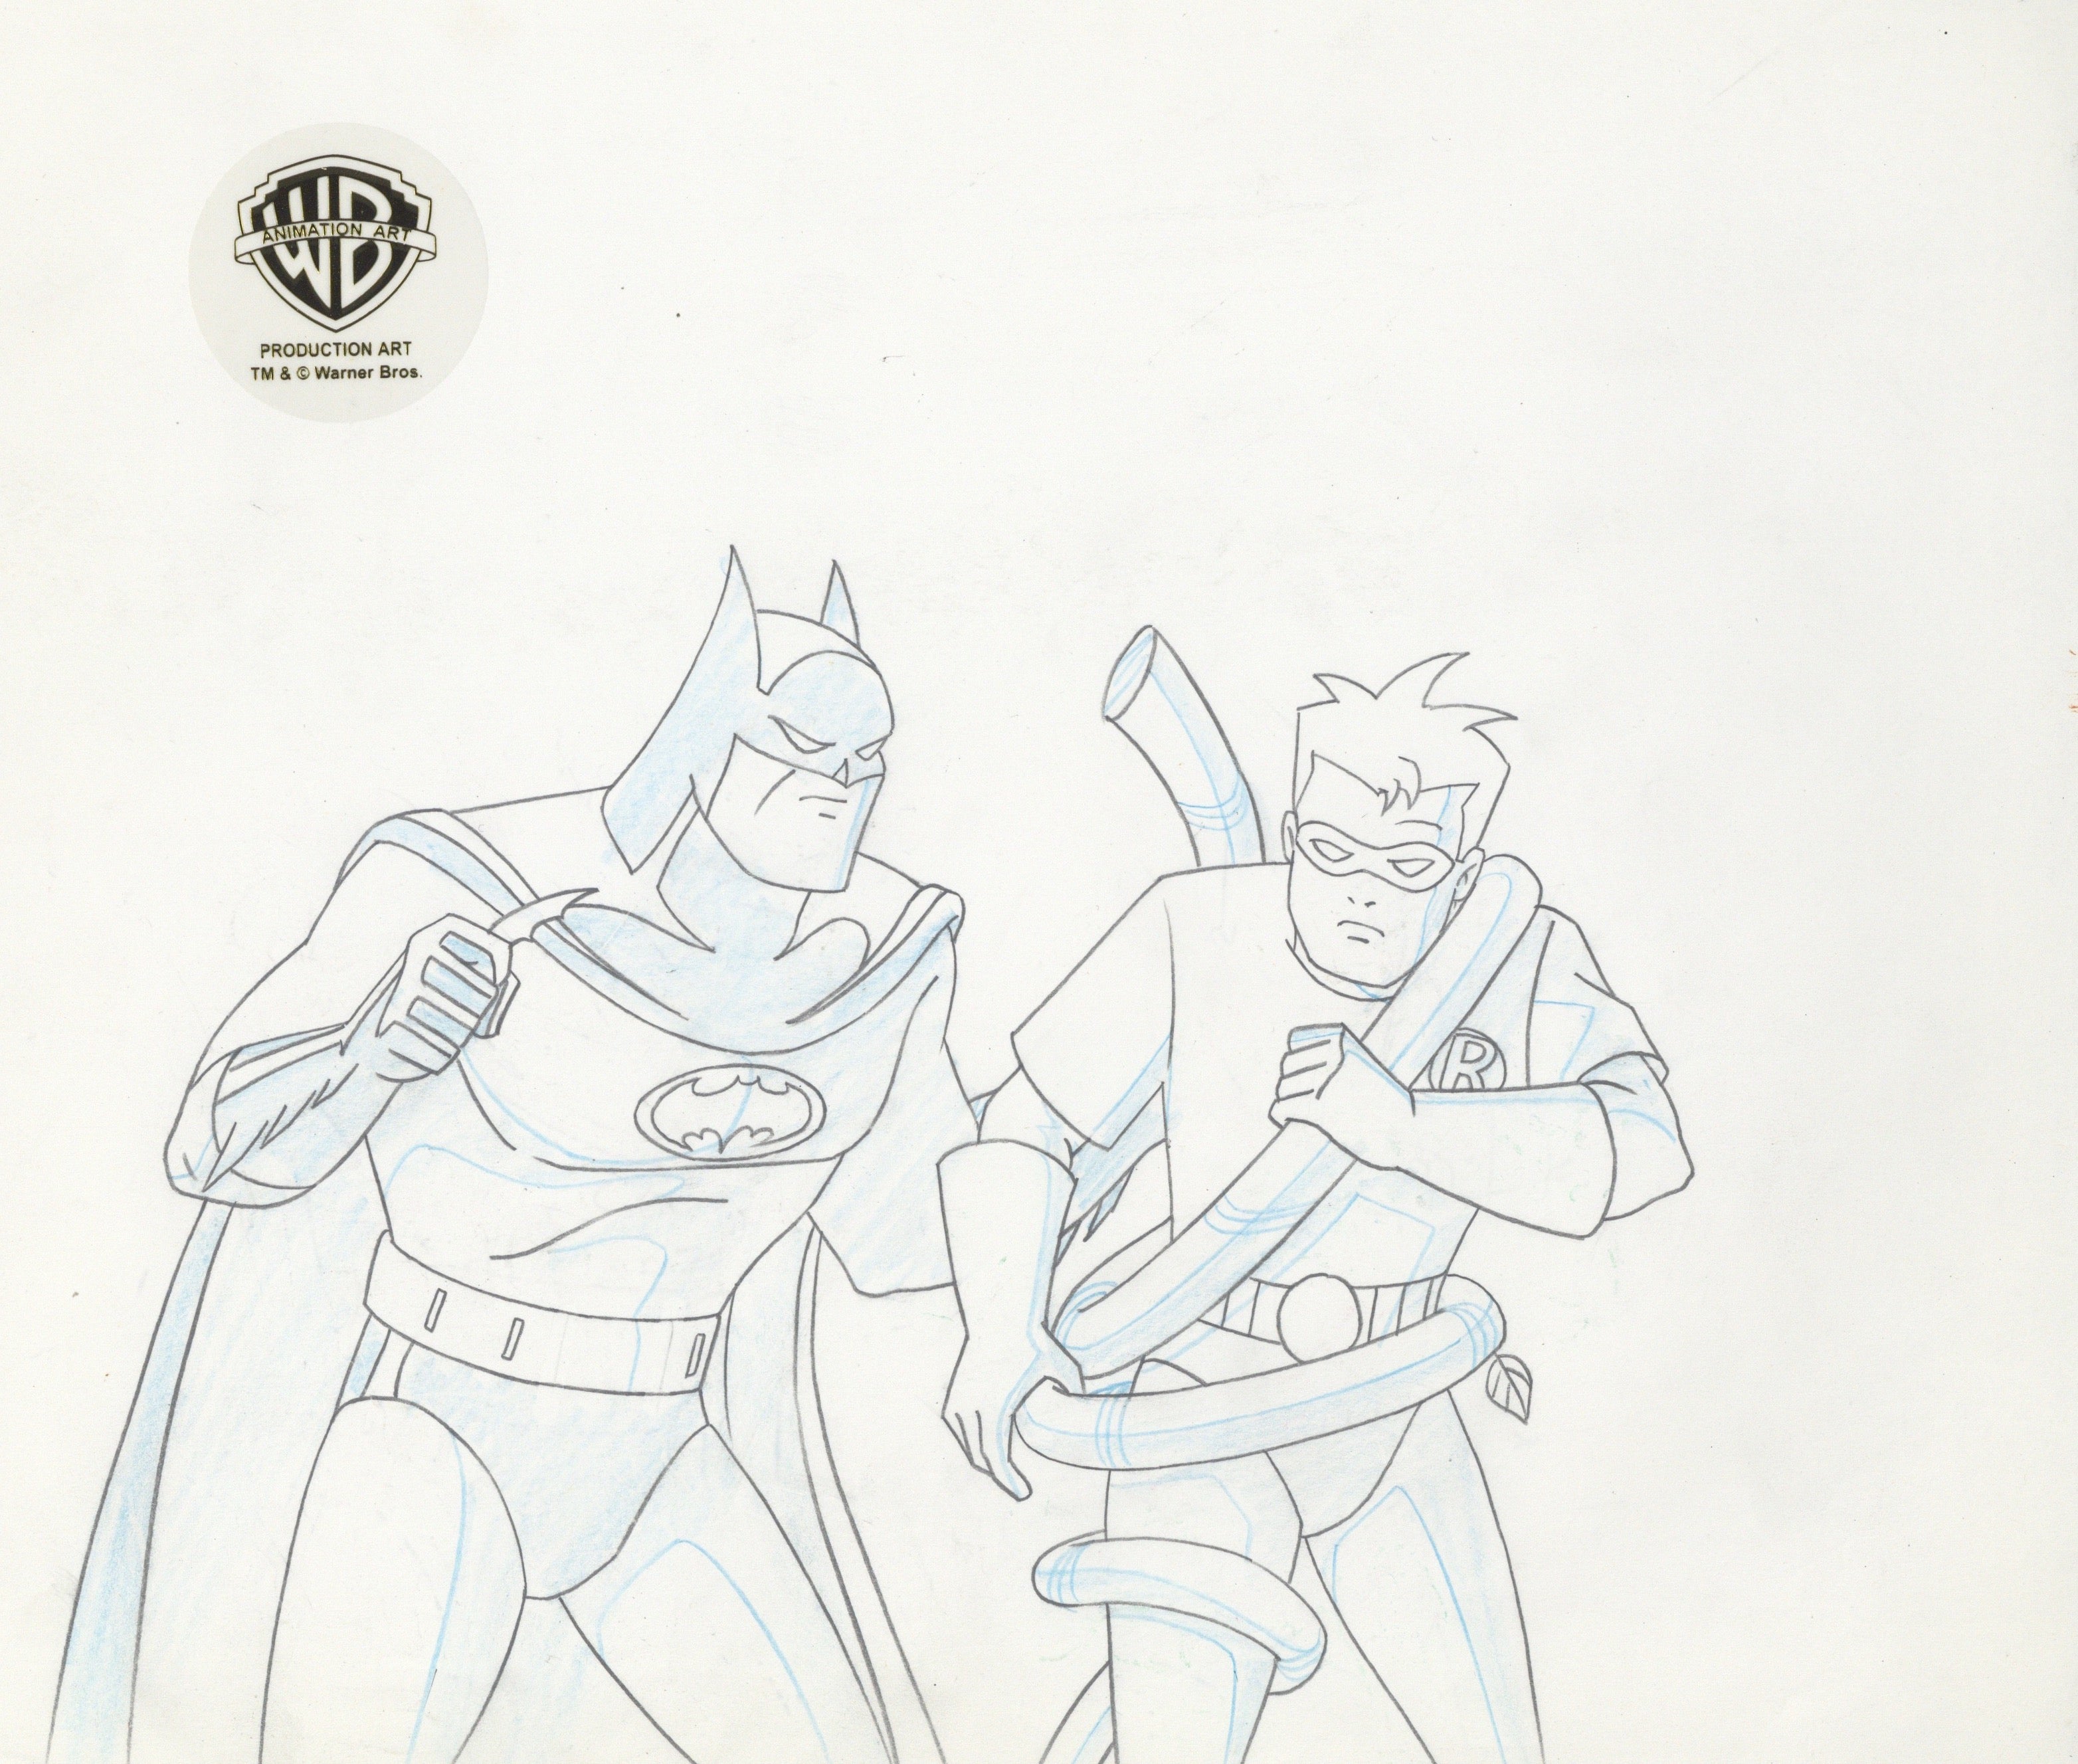 cartoon drawings of batman and robin